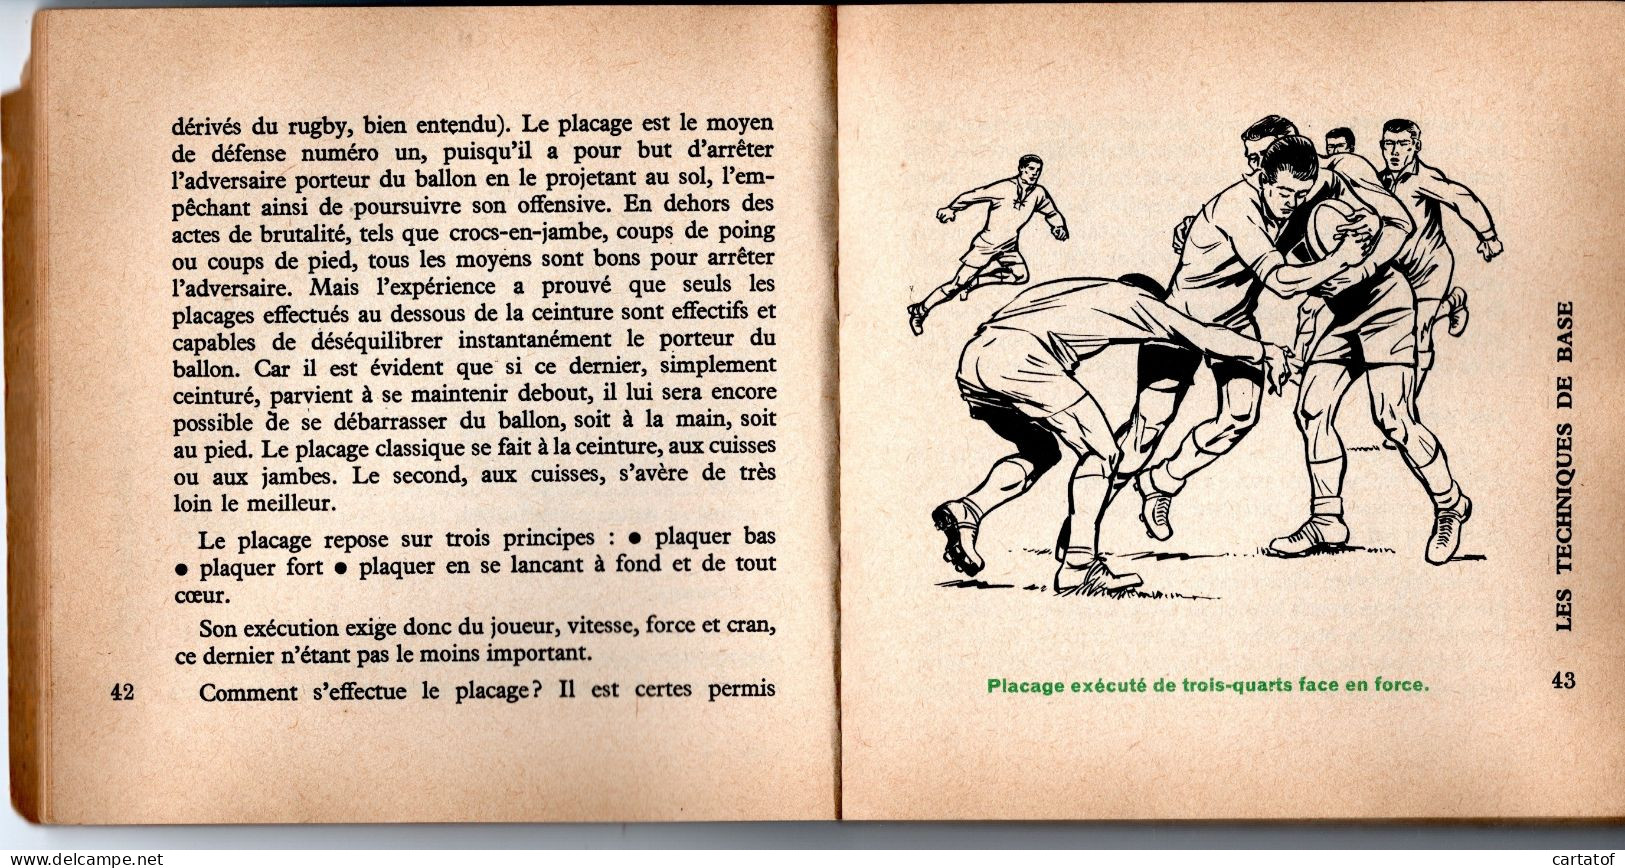 LE RUGBY . Technique Tactique Jeux par MARABOUT FLASH en 1964